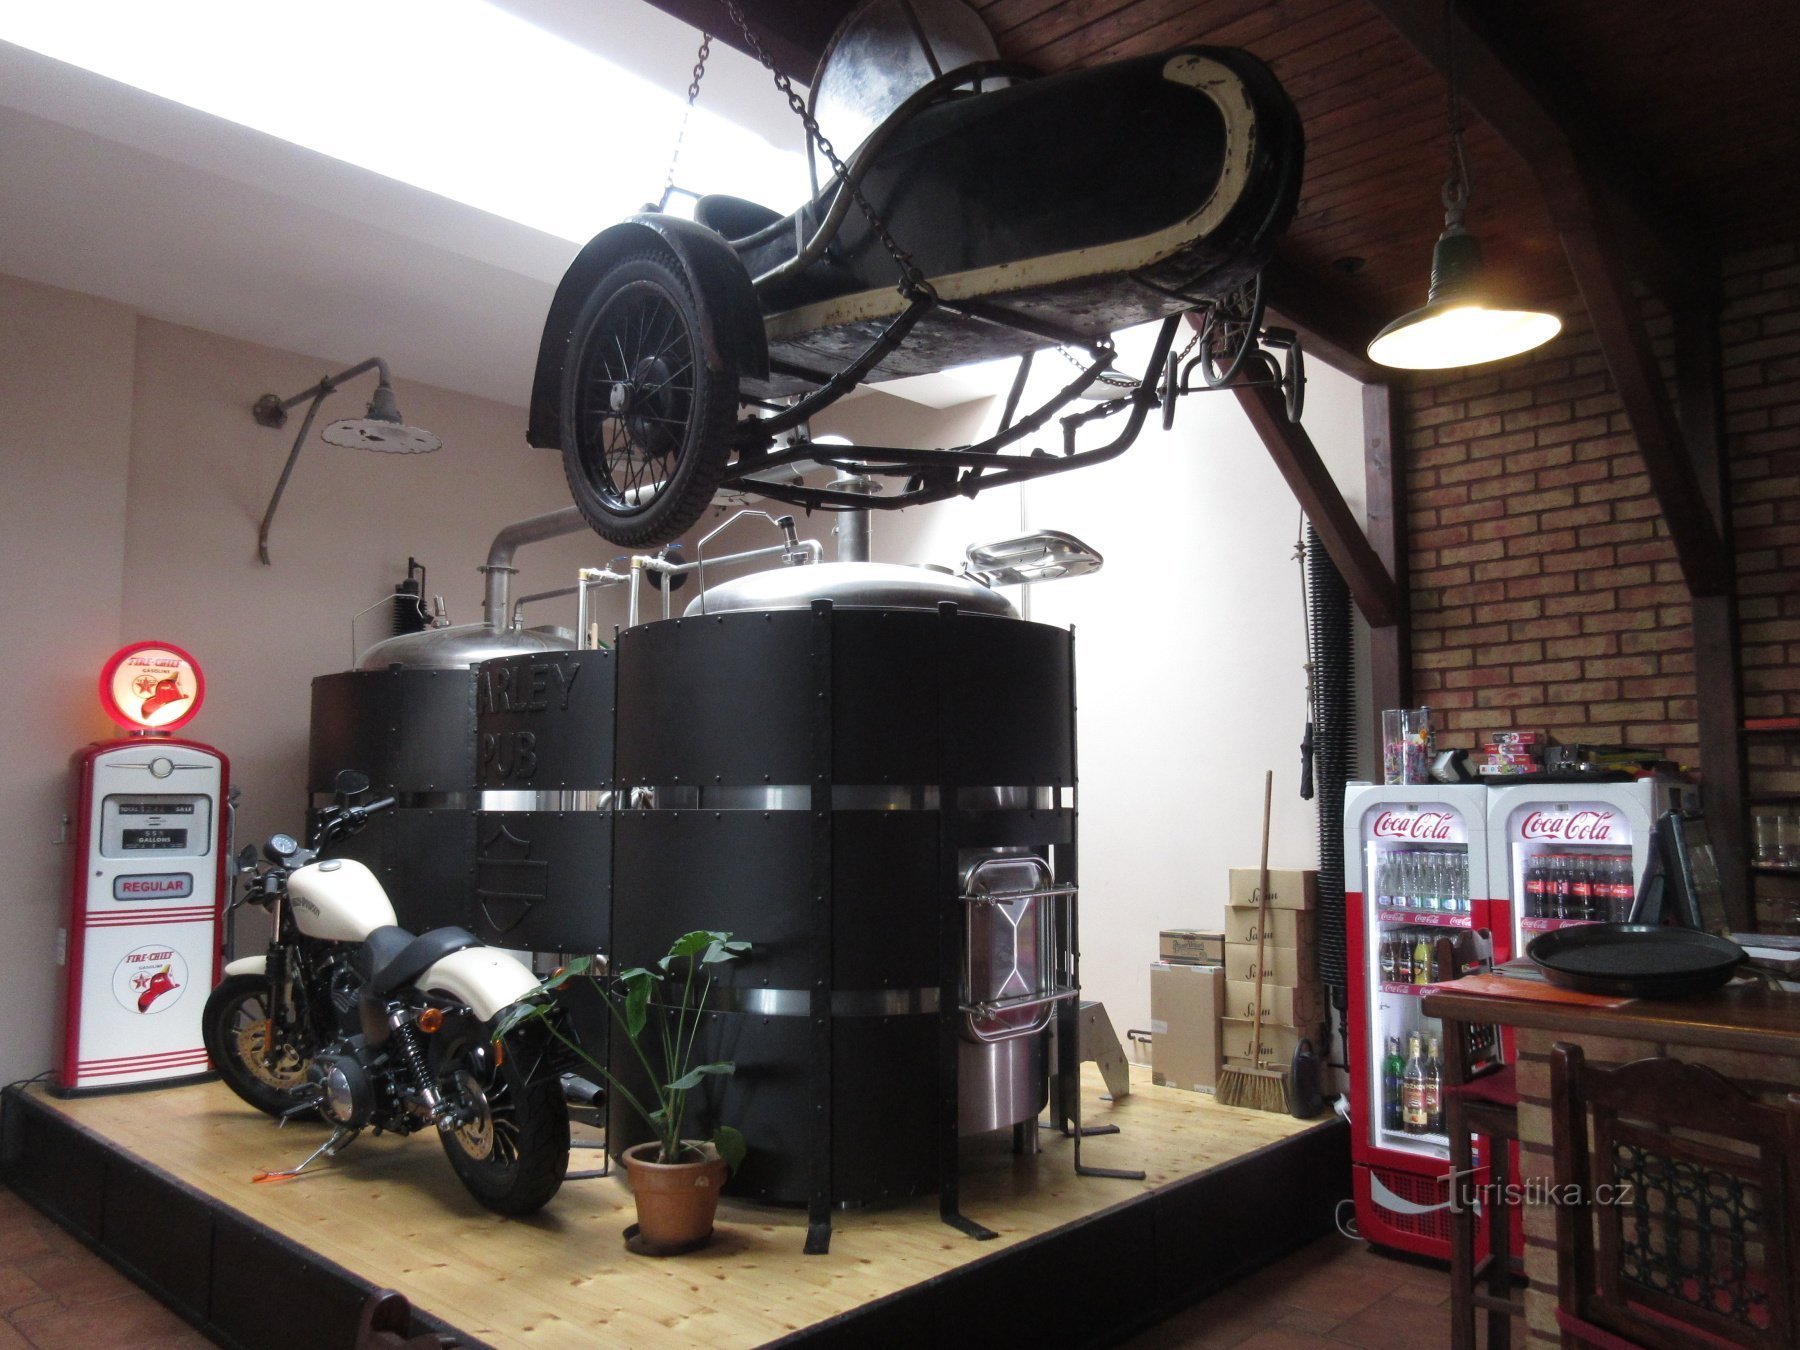 Отроковице - музей и микропивоварня Harley Pub